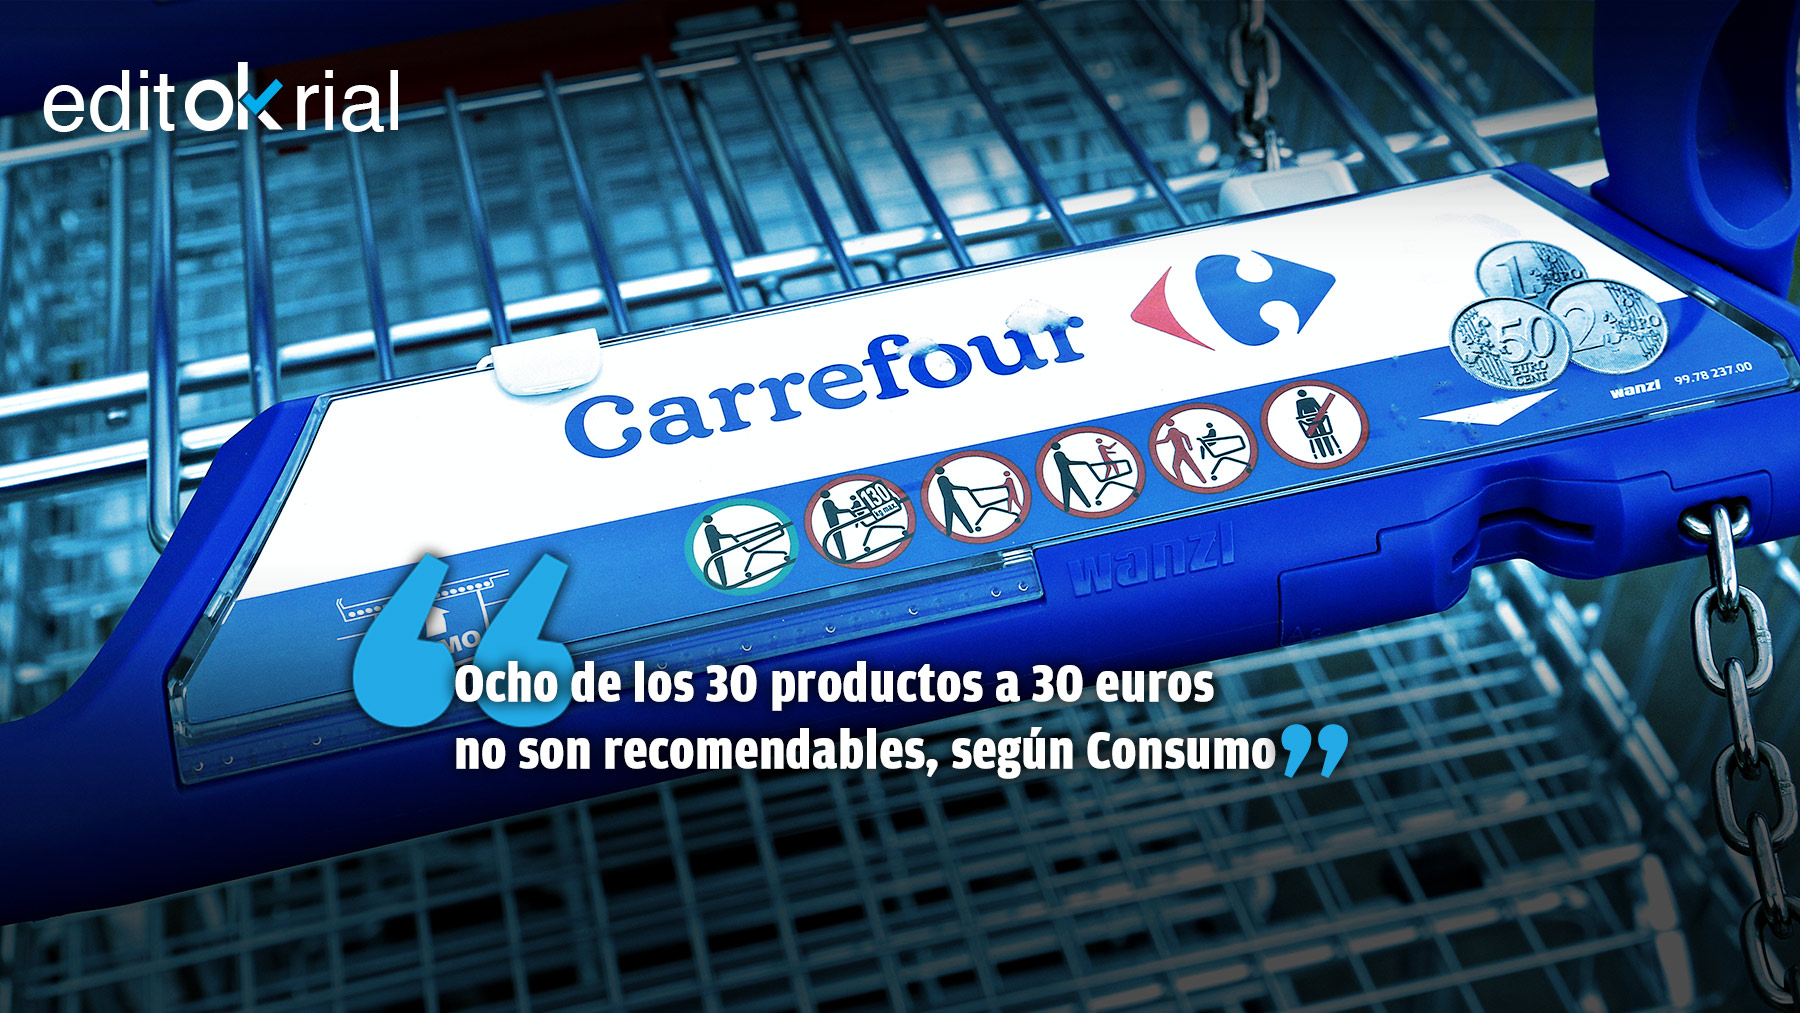 ¿Qué es peor: la cesta de Carrefour o la canastilla cubana?